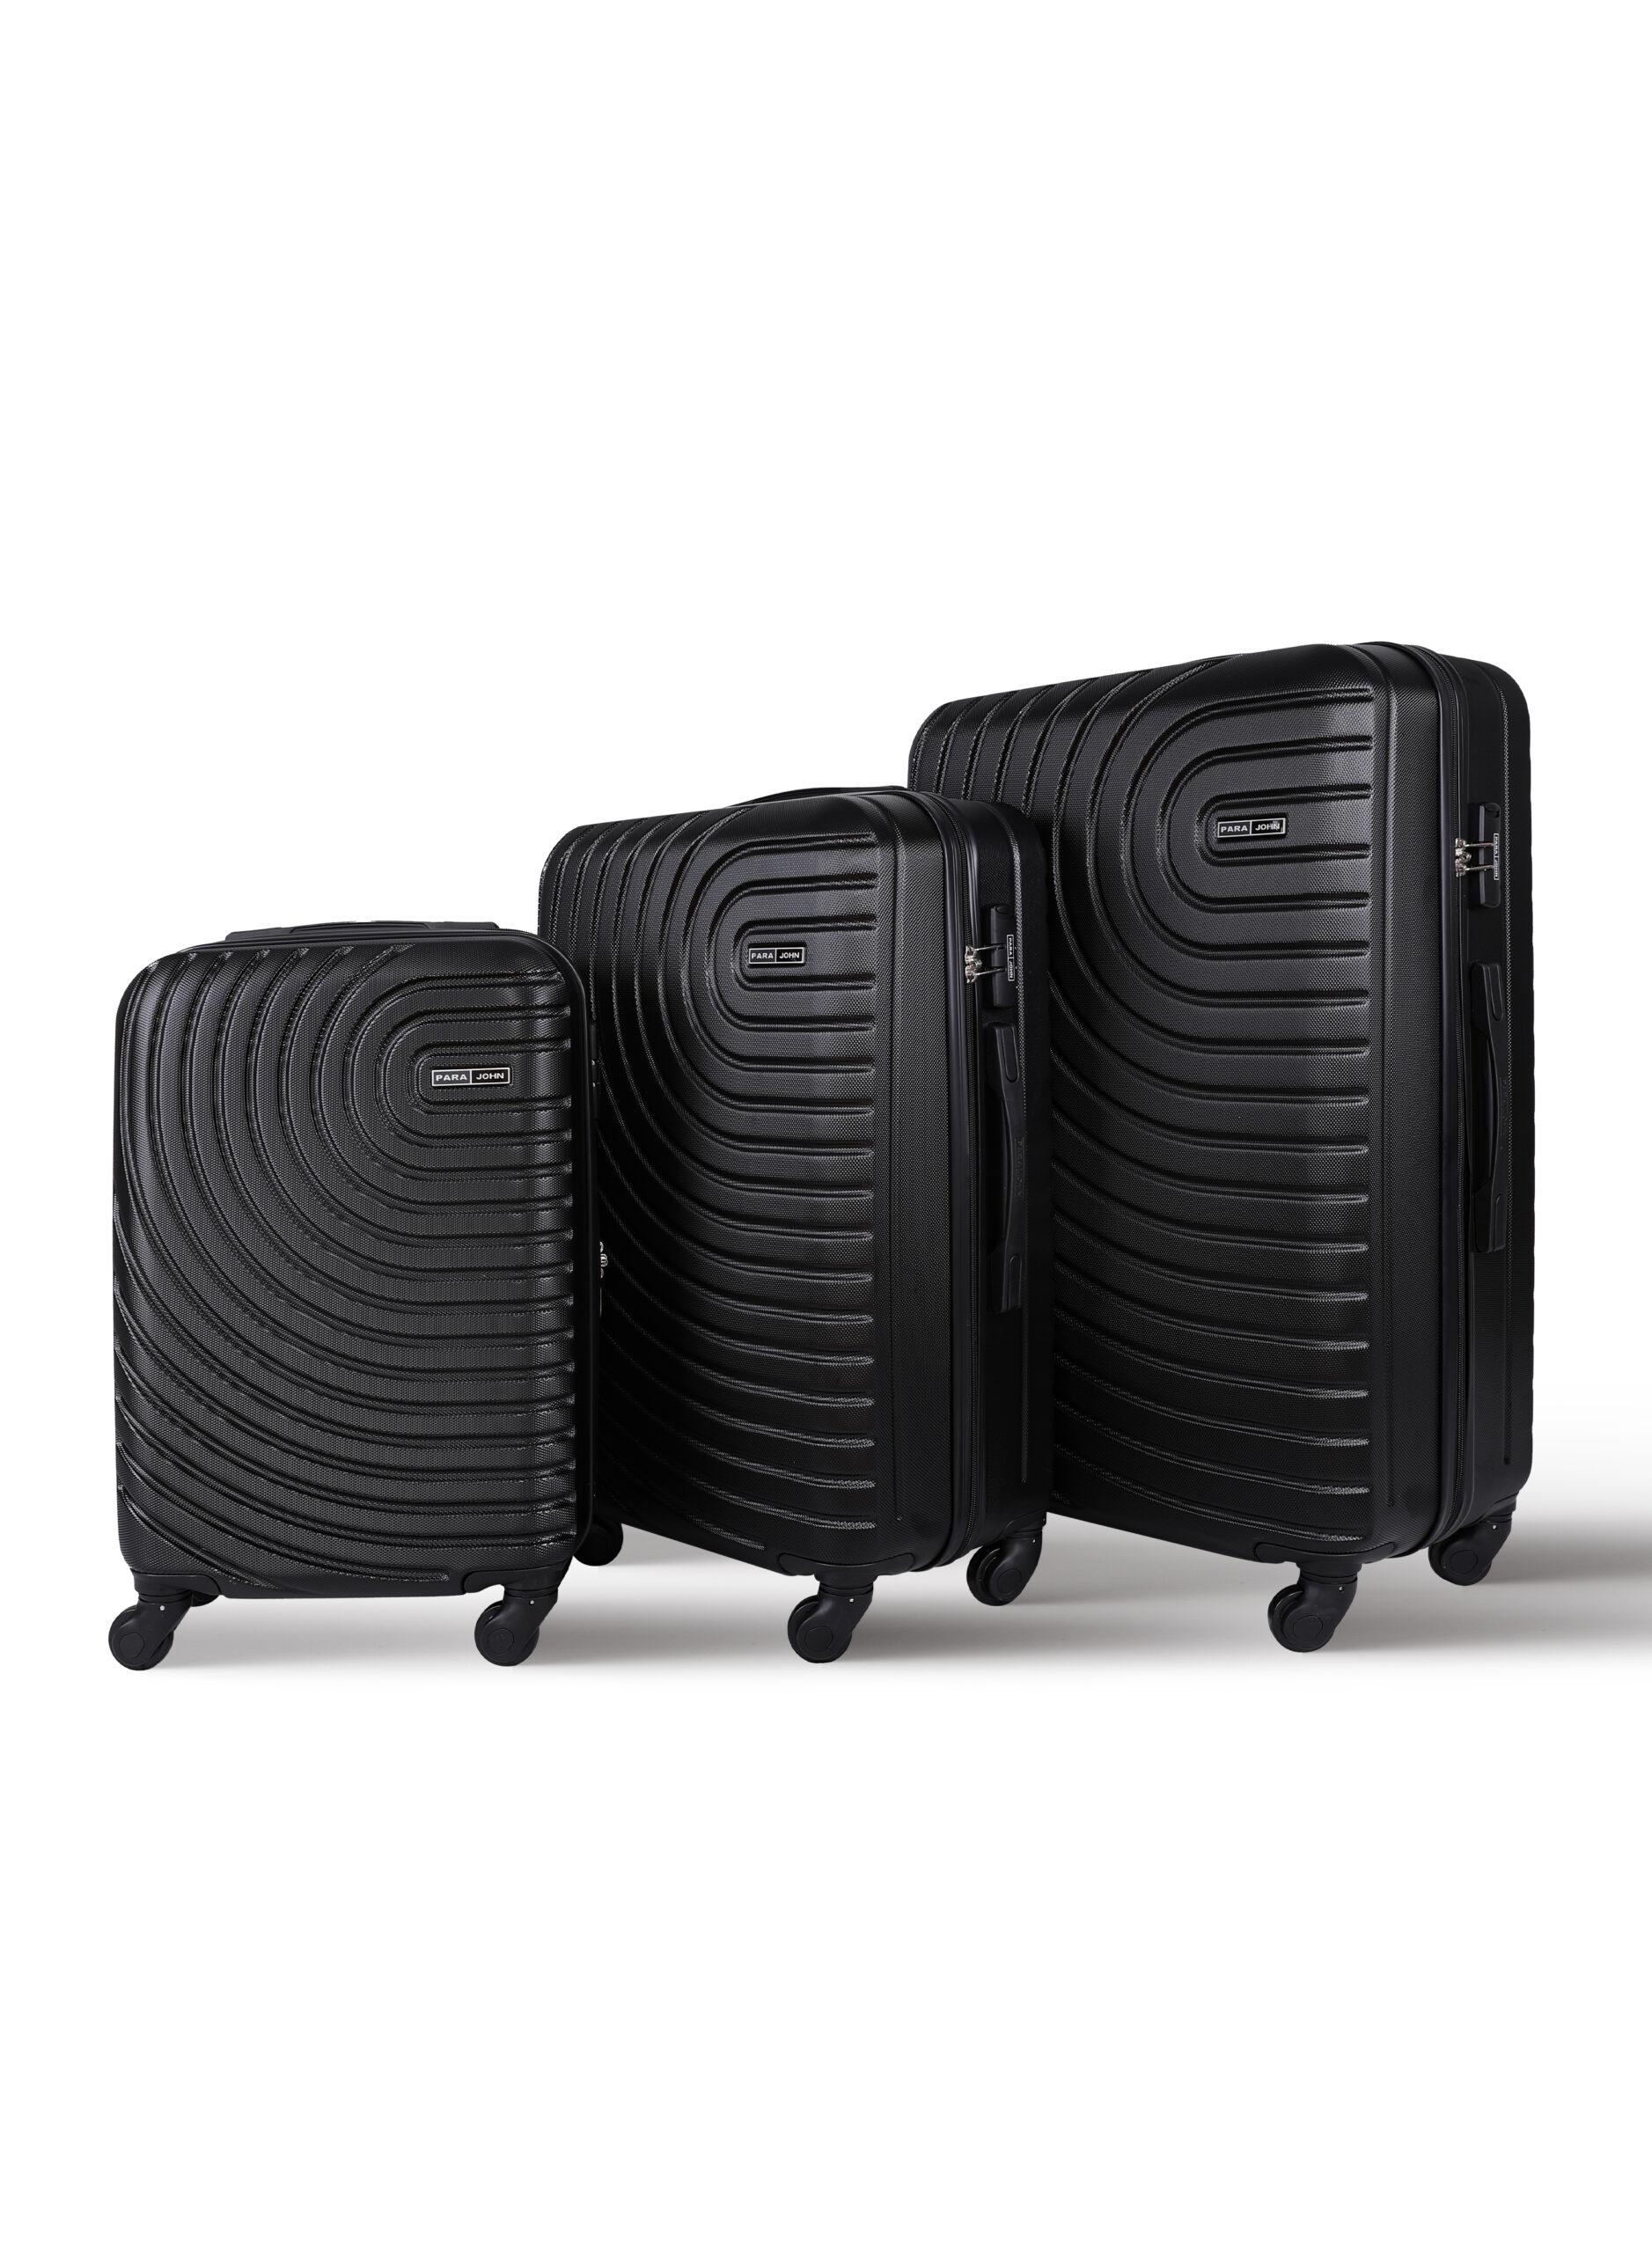 مجموعة شنط سفر 3 قطع قياس 20 و 24 و 28 بوصة لون أسود PARA JOHN 3-Piece Hard side ABS Luggage Trolley Set